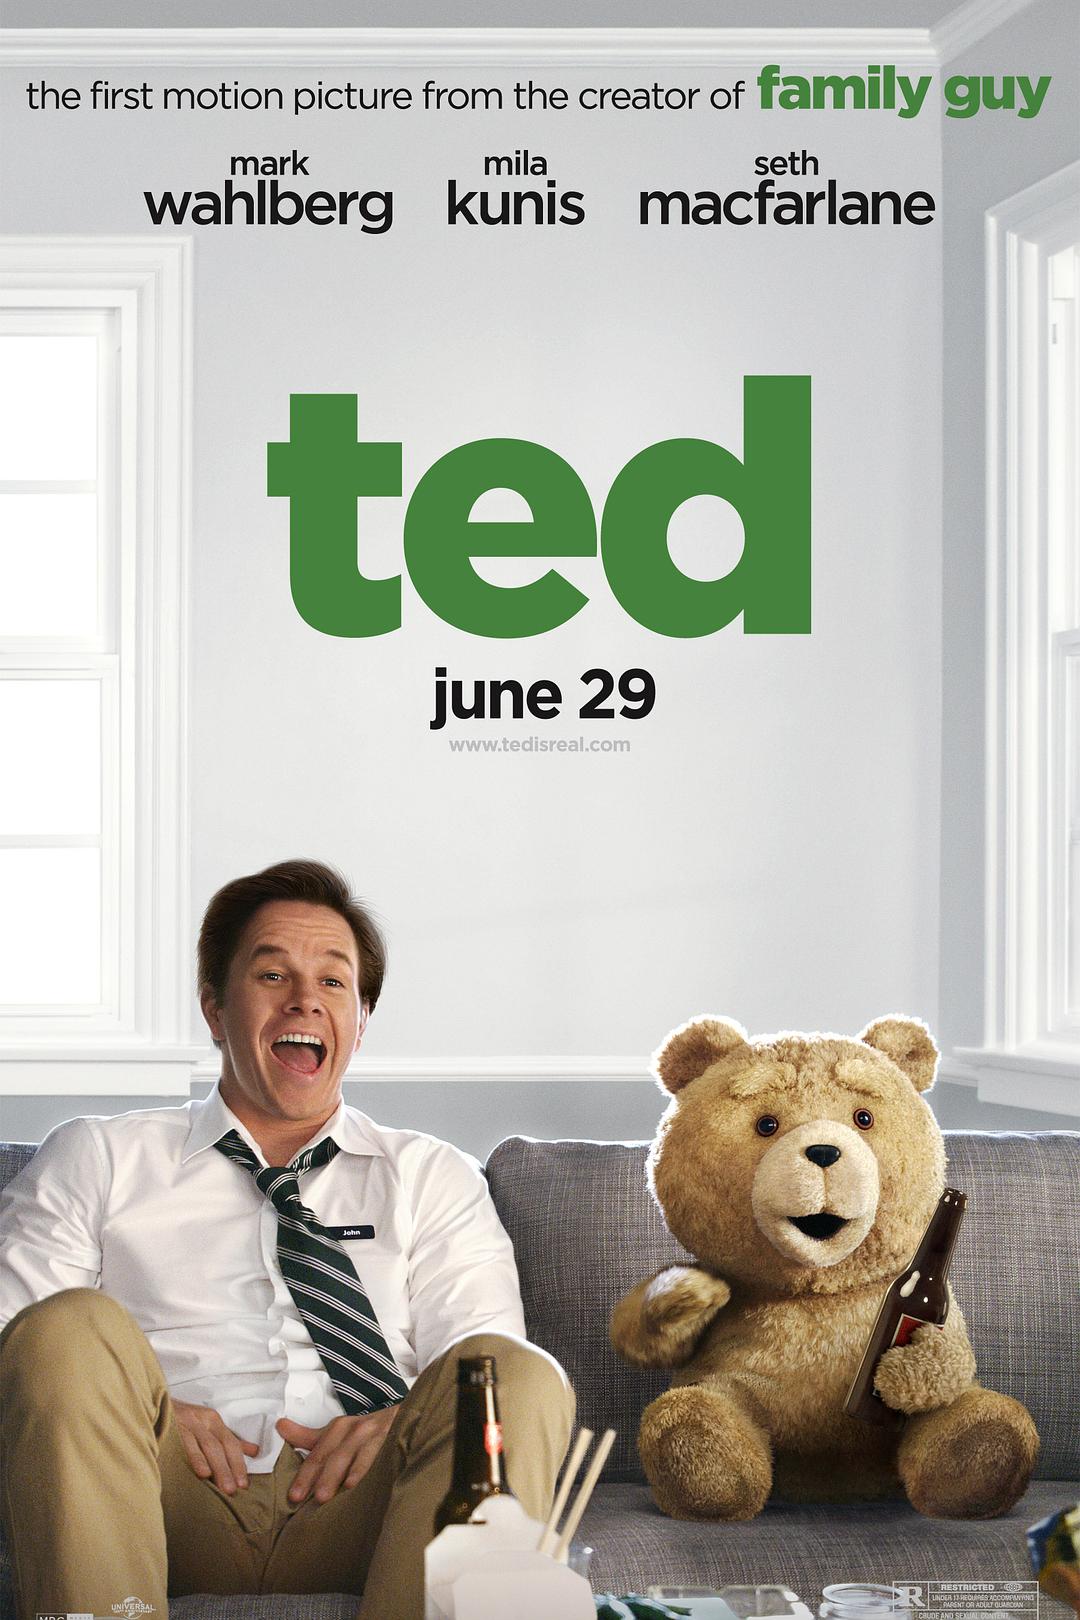 Ted 2012 泰迪熊2012 高清壁纸17 - 1024x768 壁纸下载 - Ted 2012 泰迪熊2012 高清壁纸 - 影视壁纸 ...